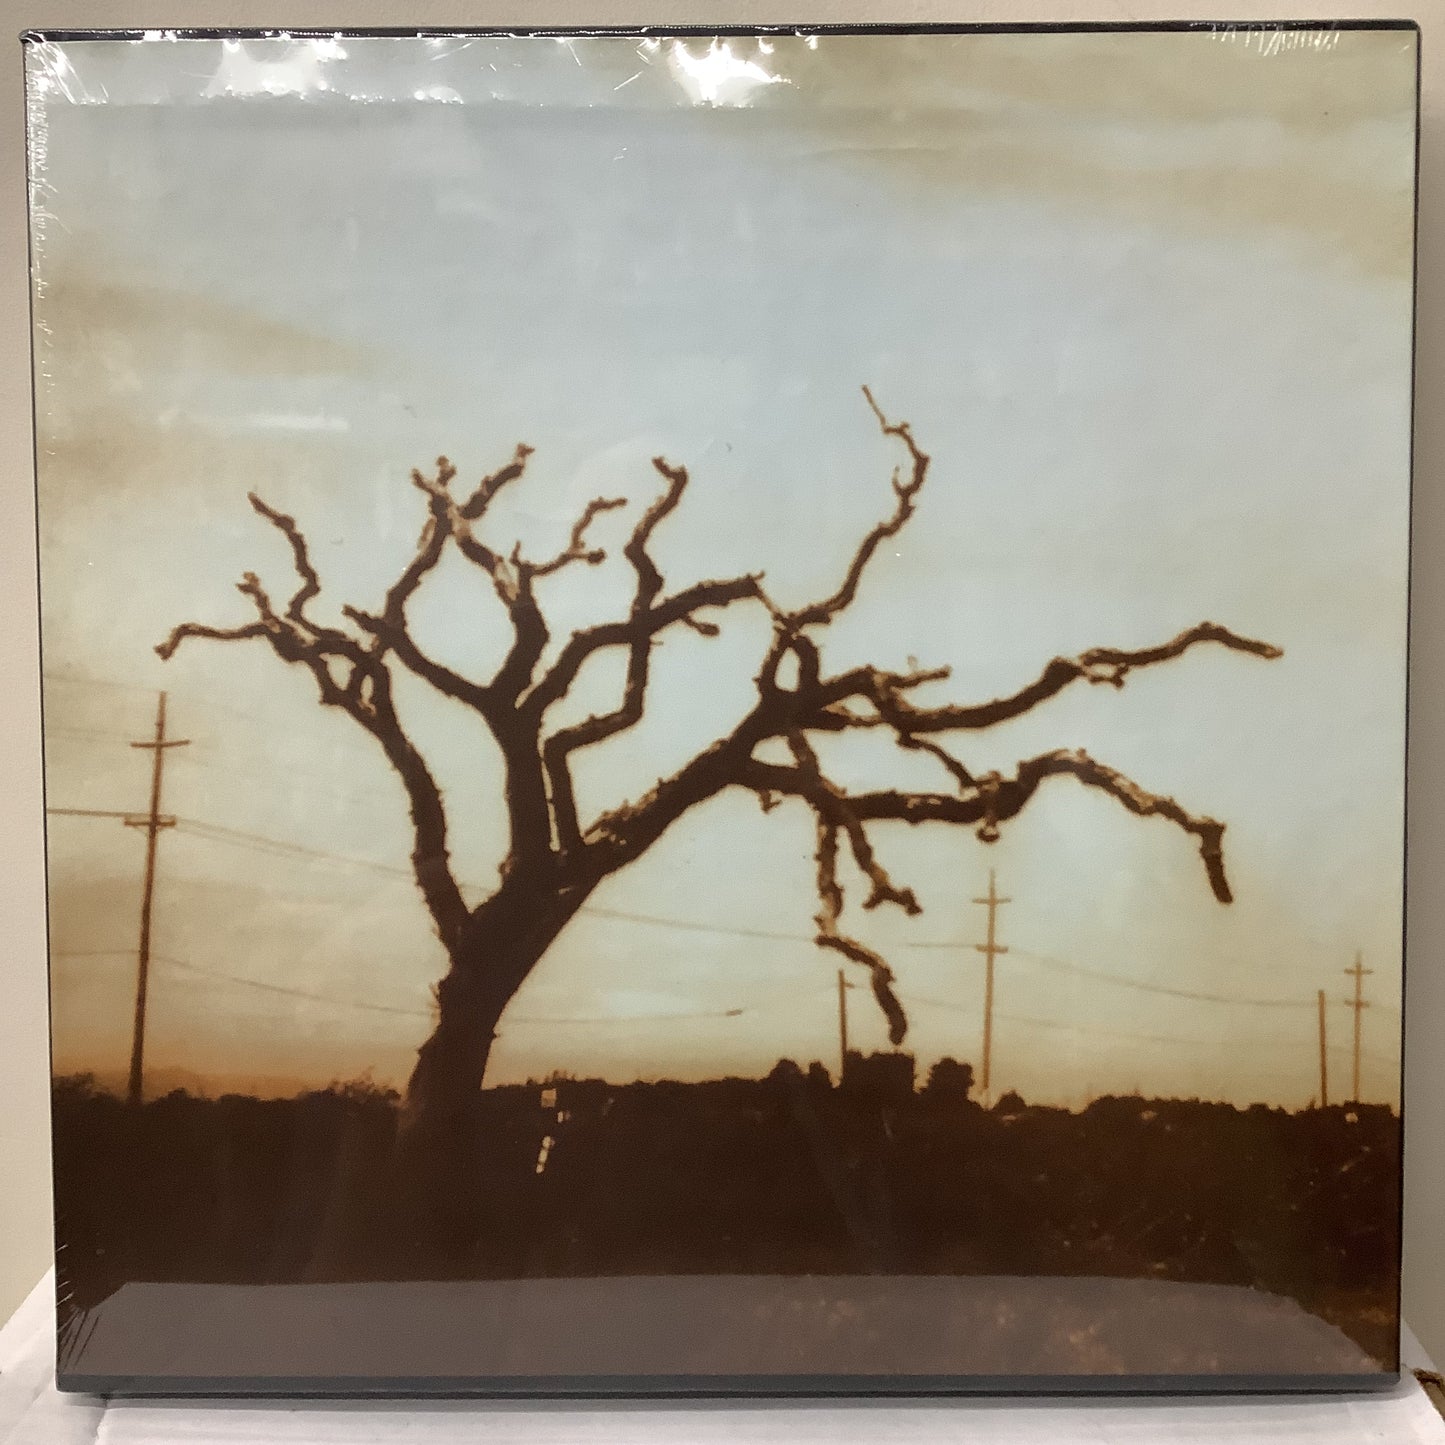 Tom Waits - Huérfanos - Caja de LP